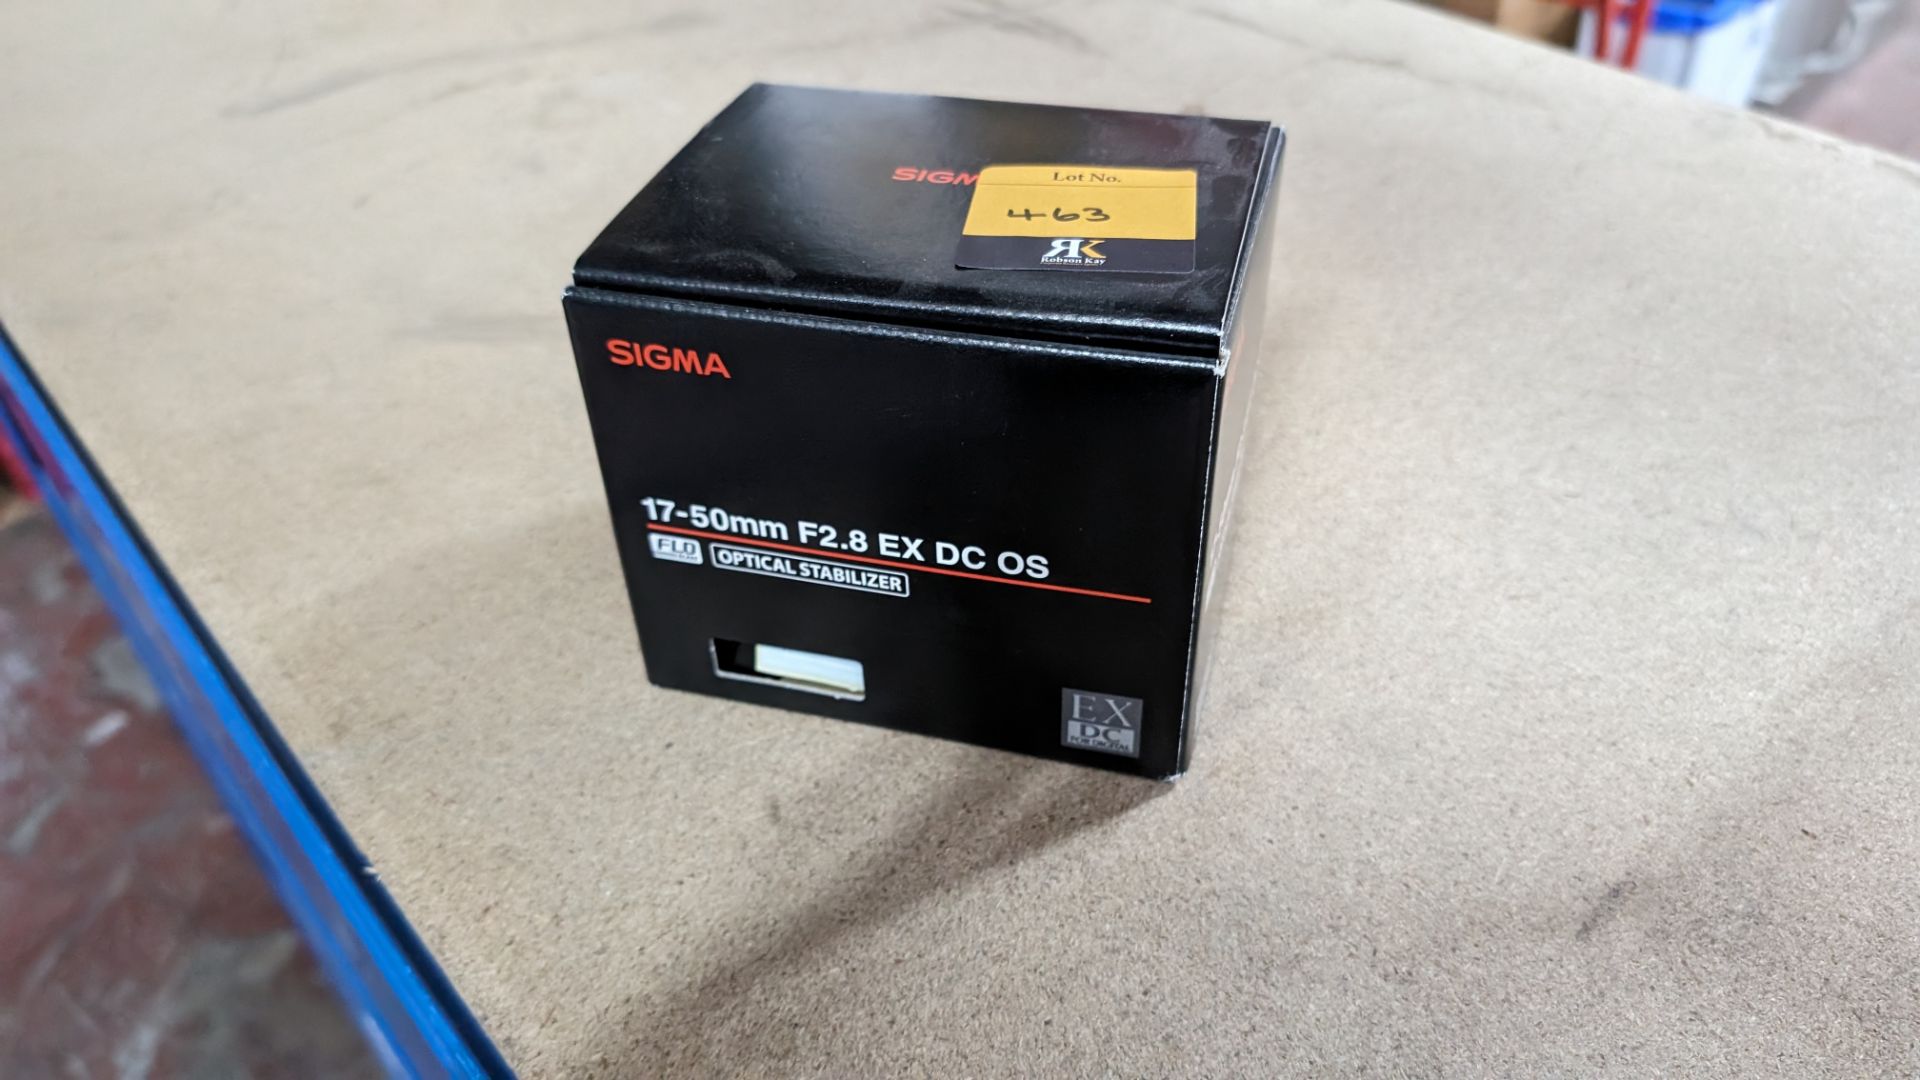 Sigma 17-50mm f2.8 EX DC OS optical stabilizer lens, including soft carry case